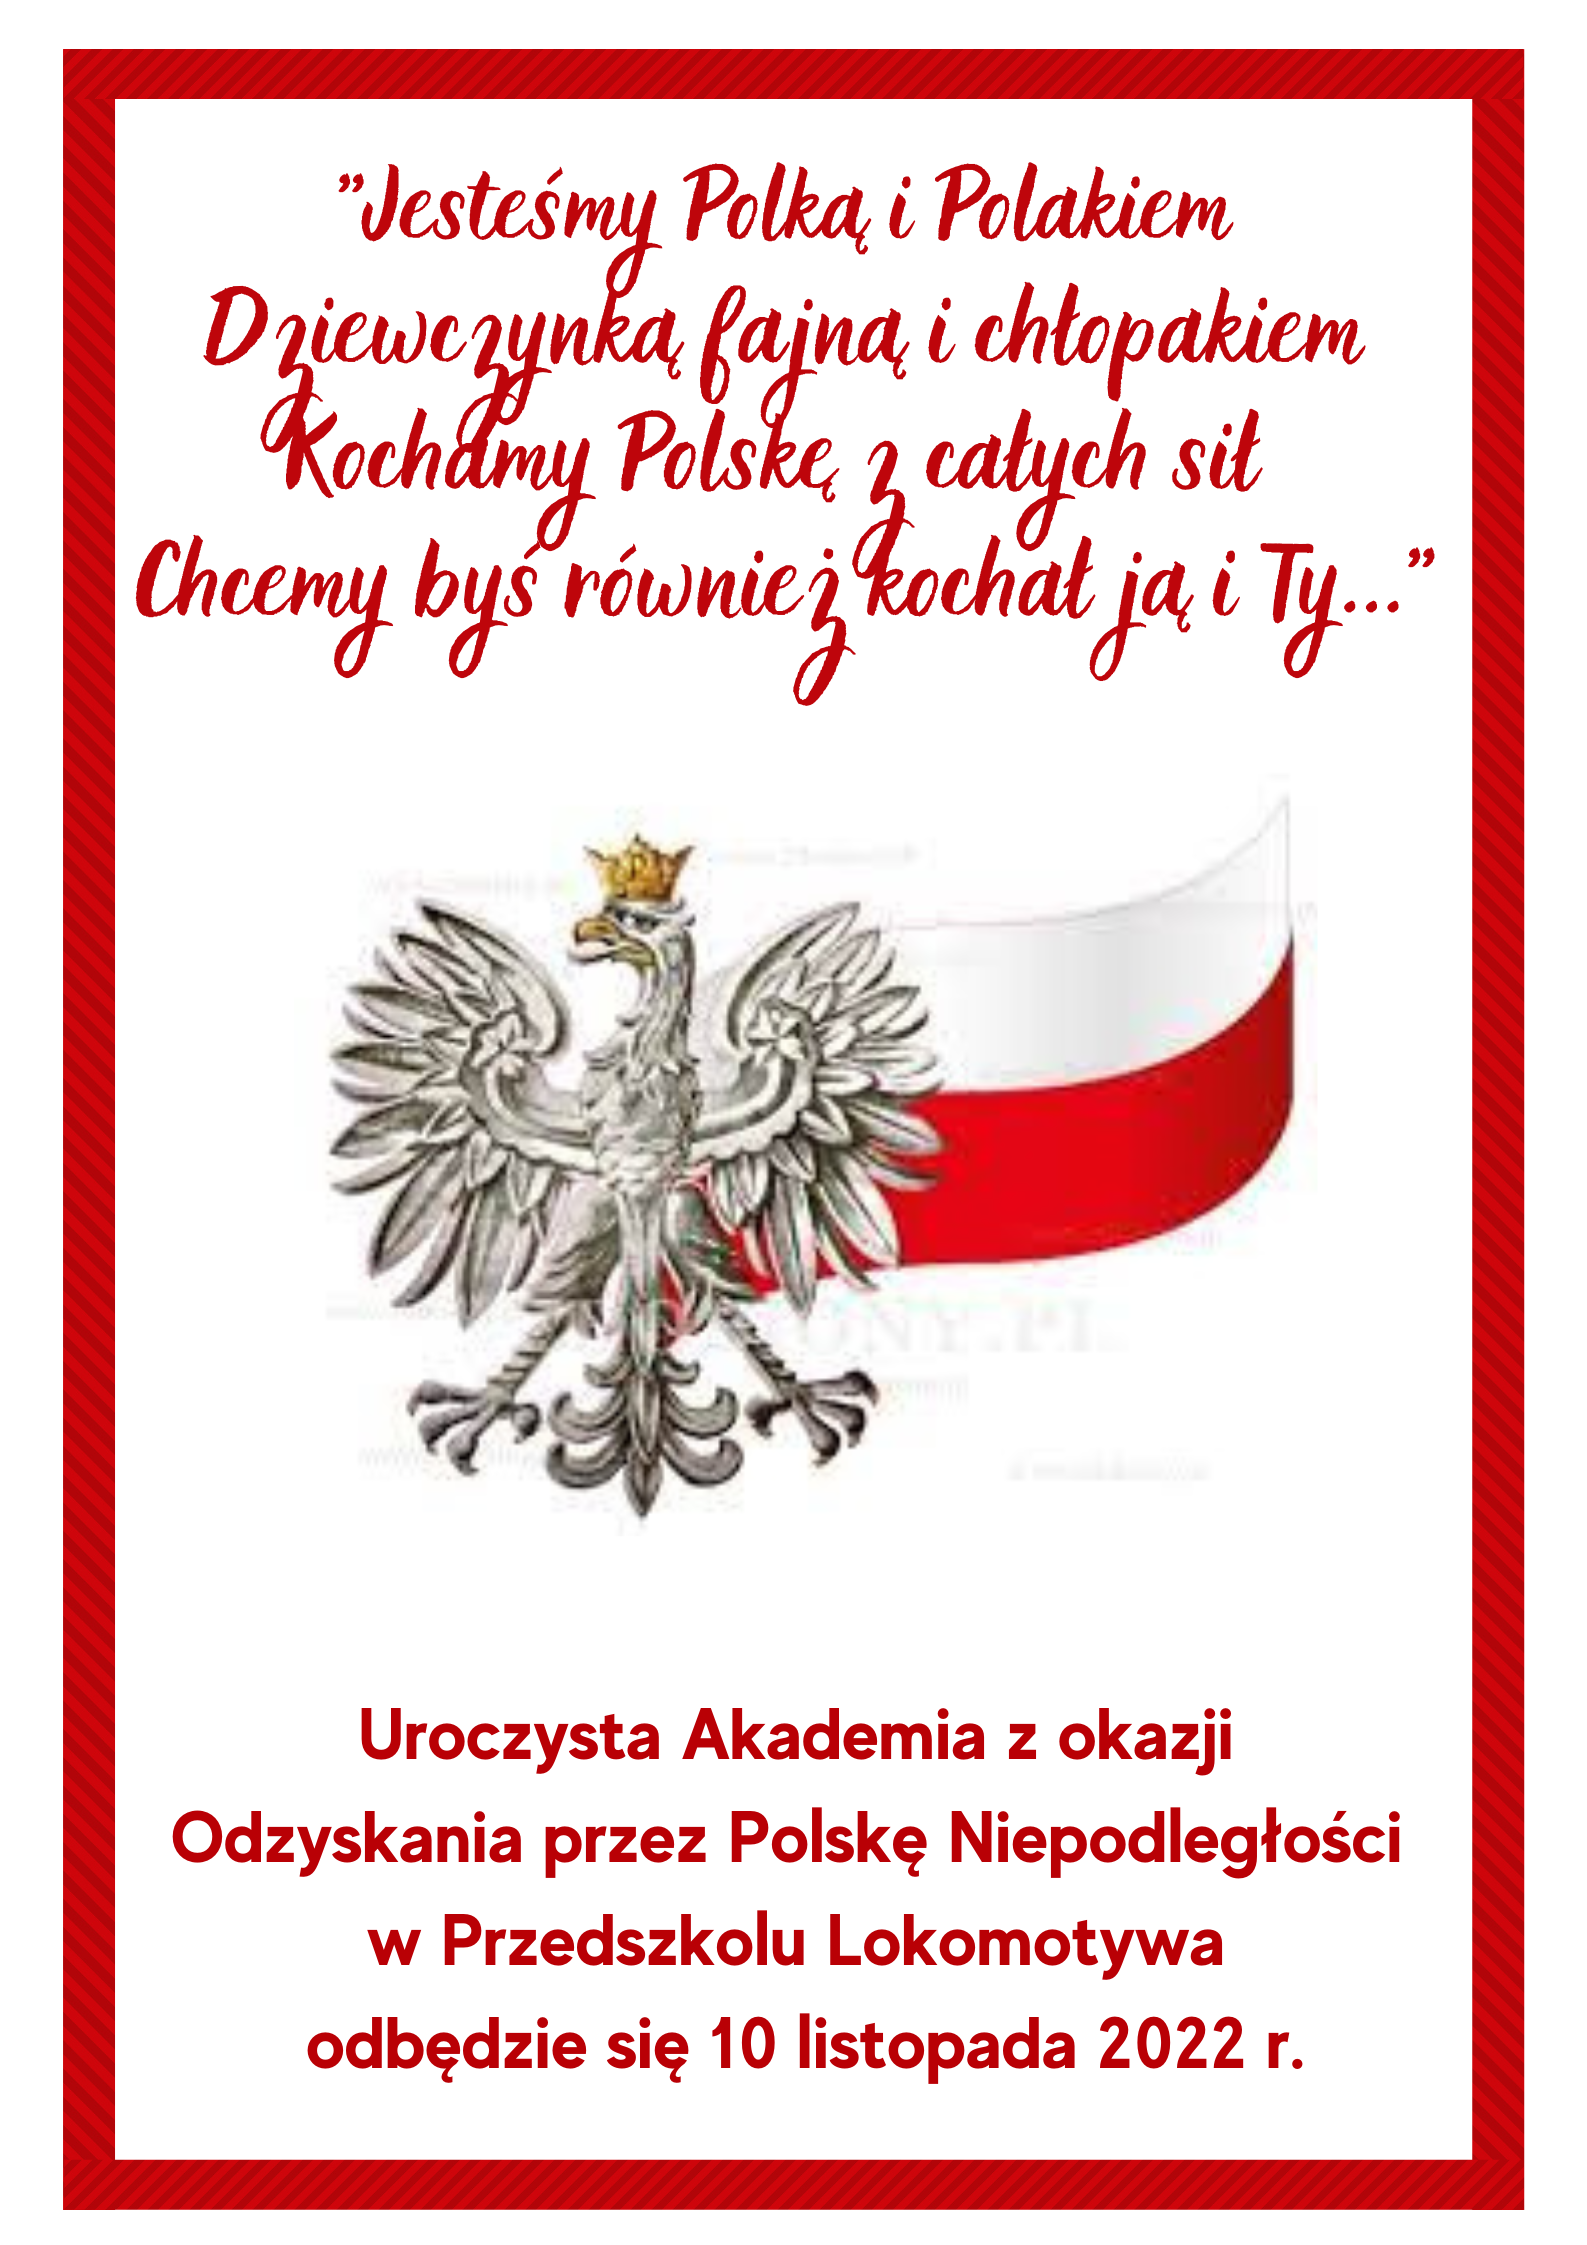 Uroczysta Akademia z okazji Odzyskania przez Polskę Niepodległości 